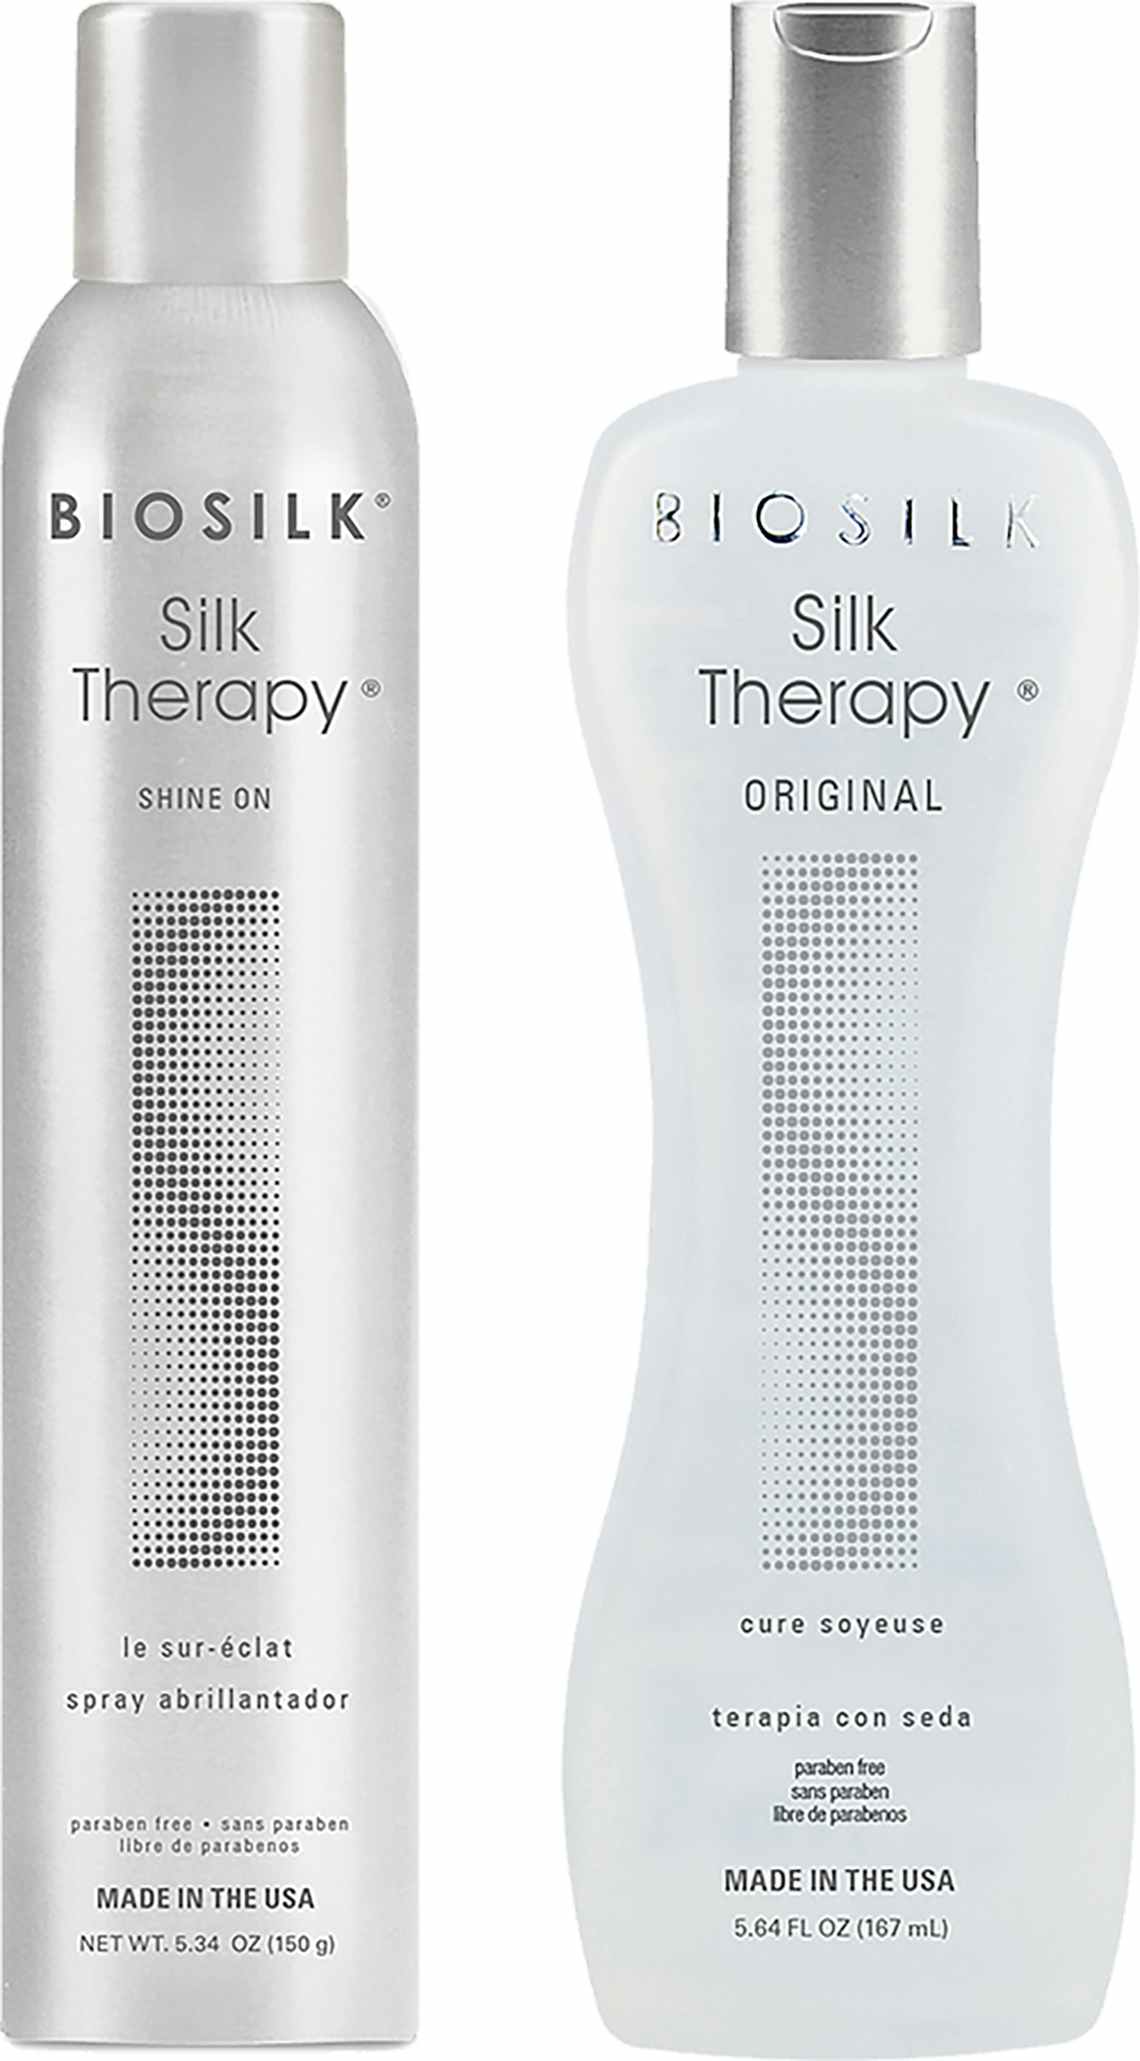 Two Biosilk bottles